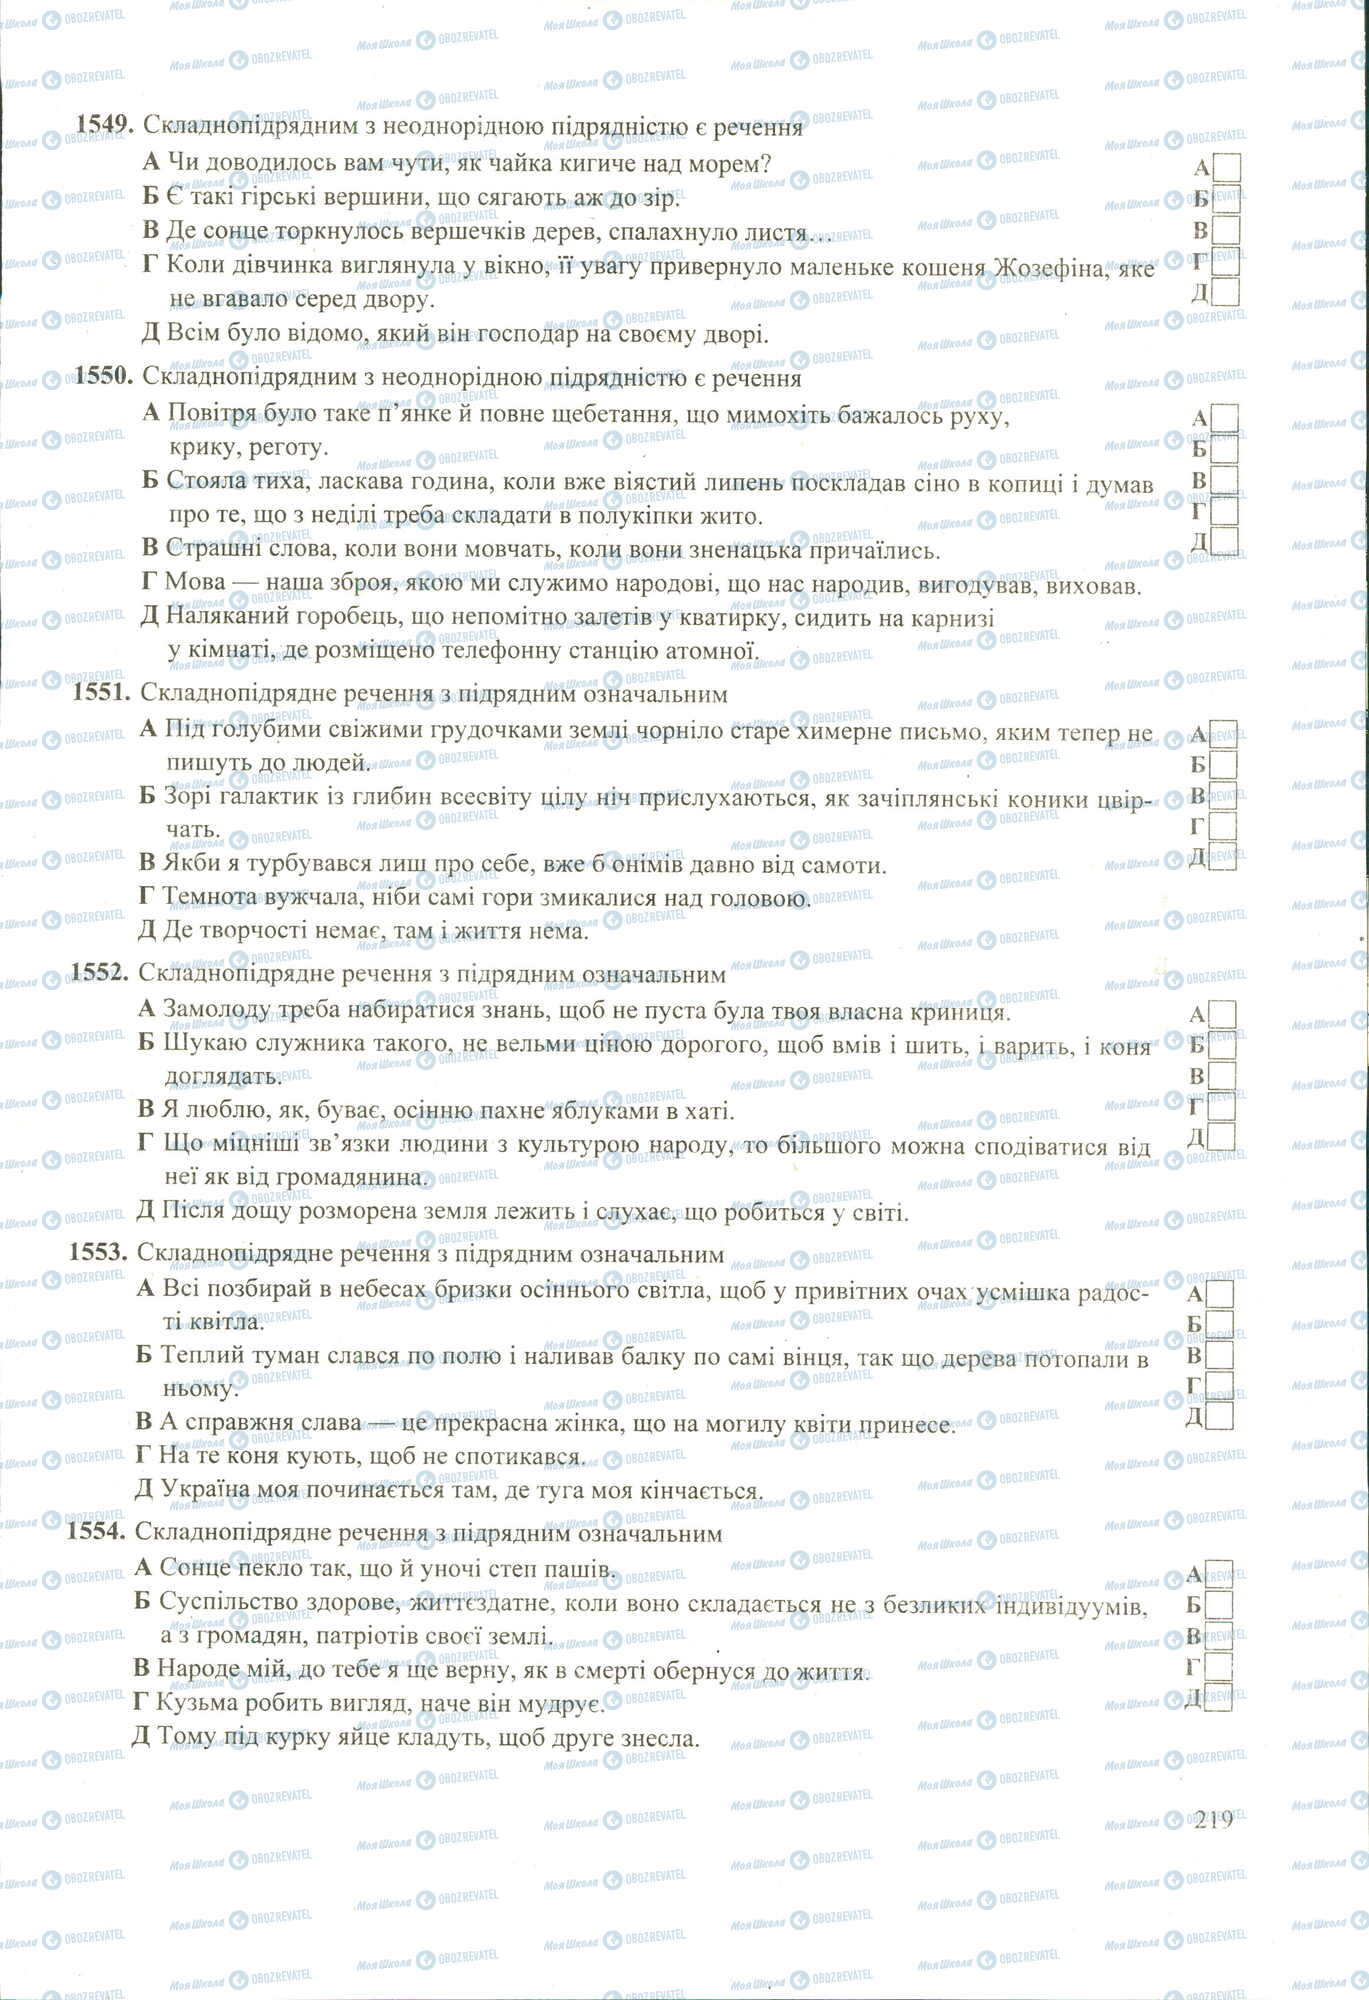 ЗНО Укр мова 11 класс страница 1549-1554